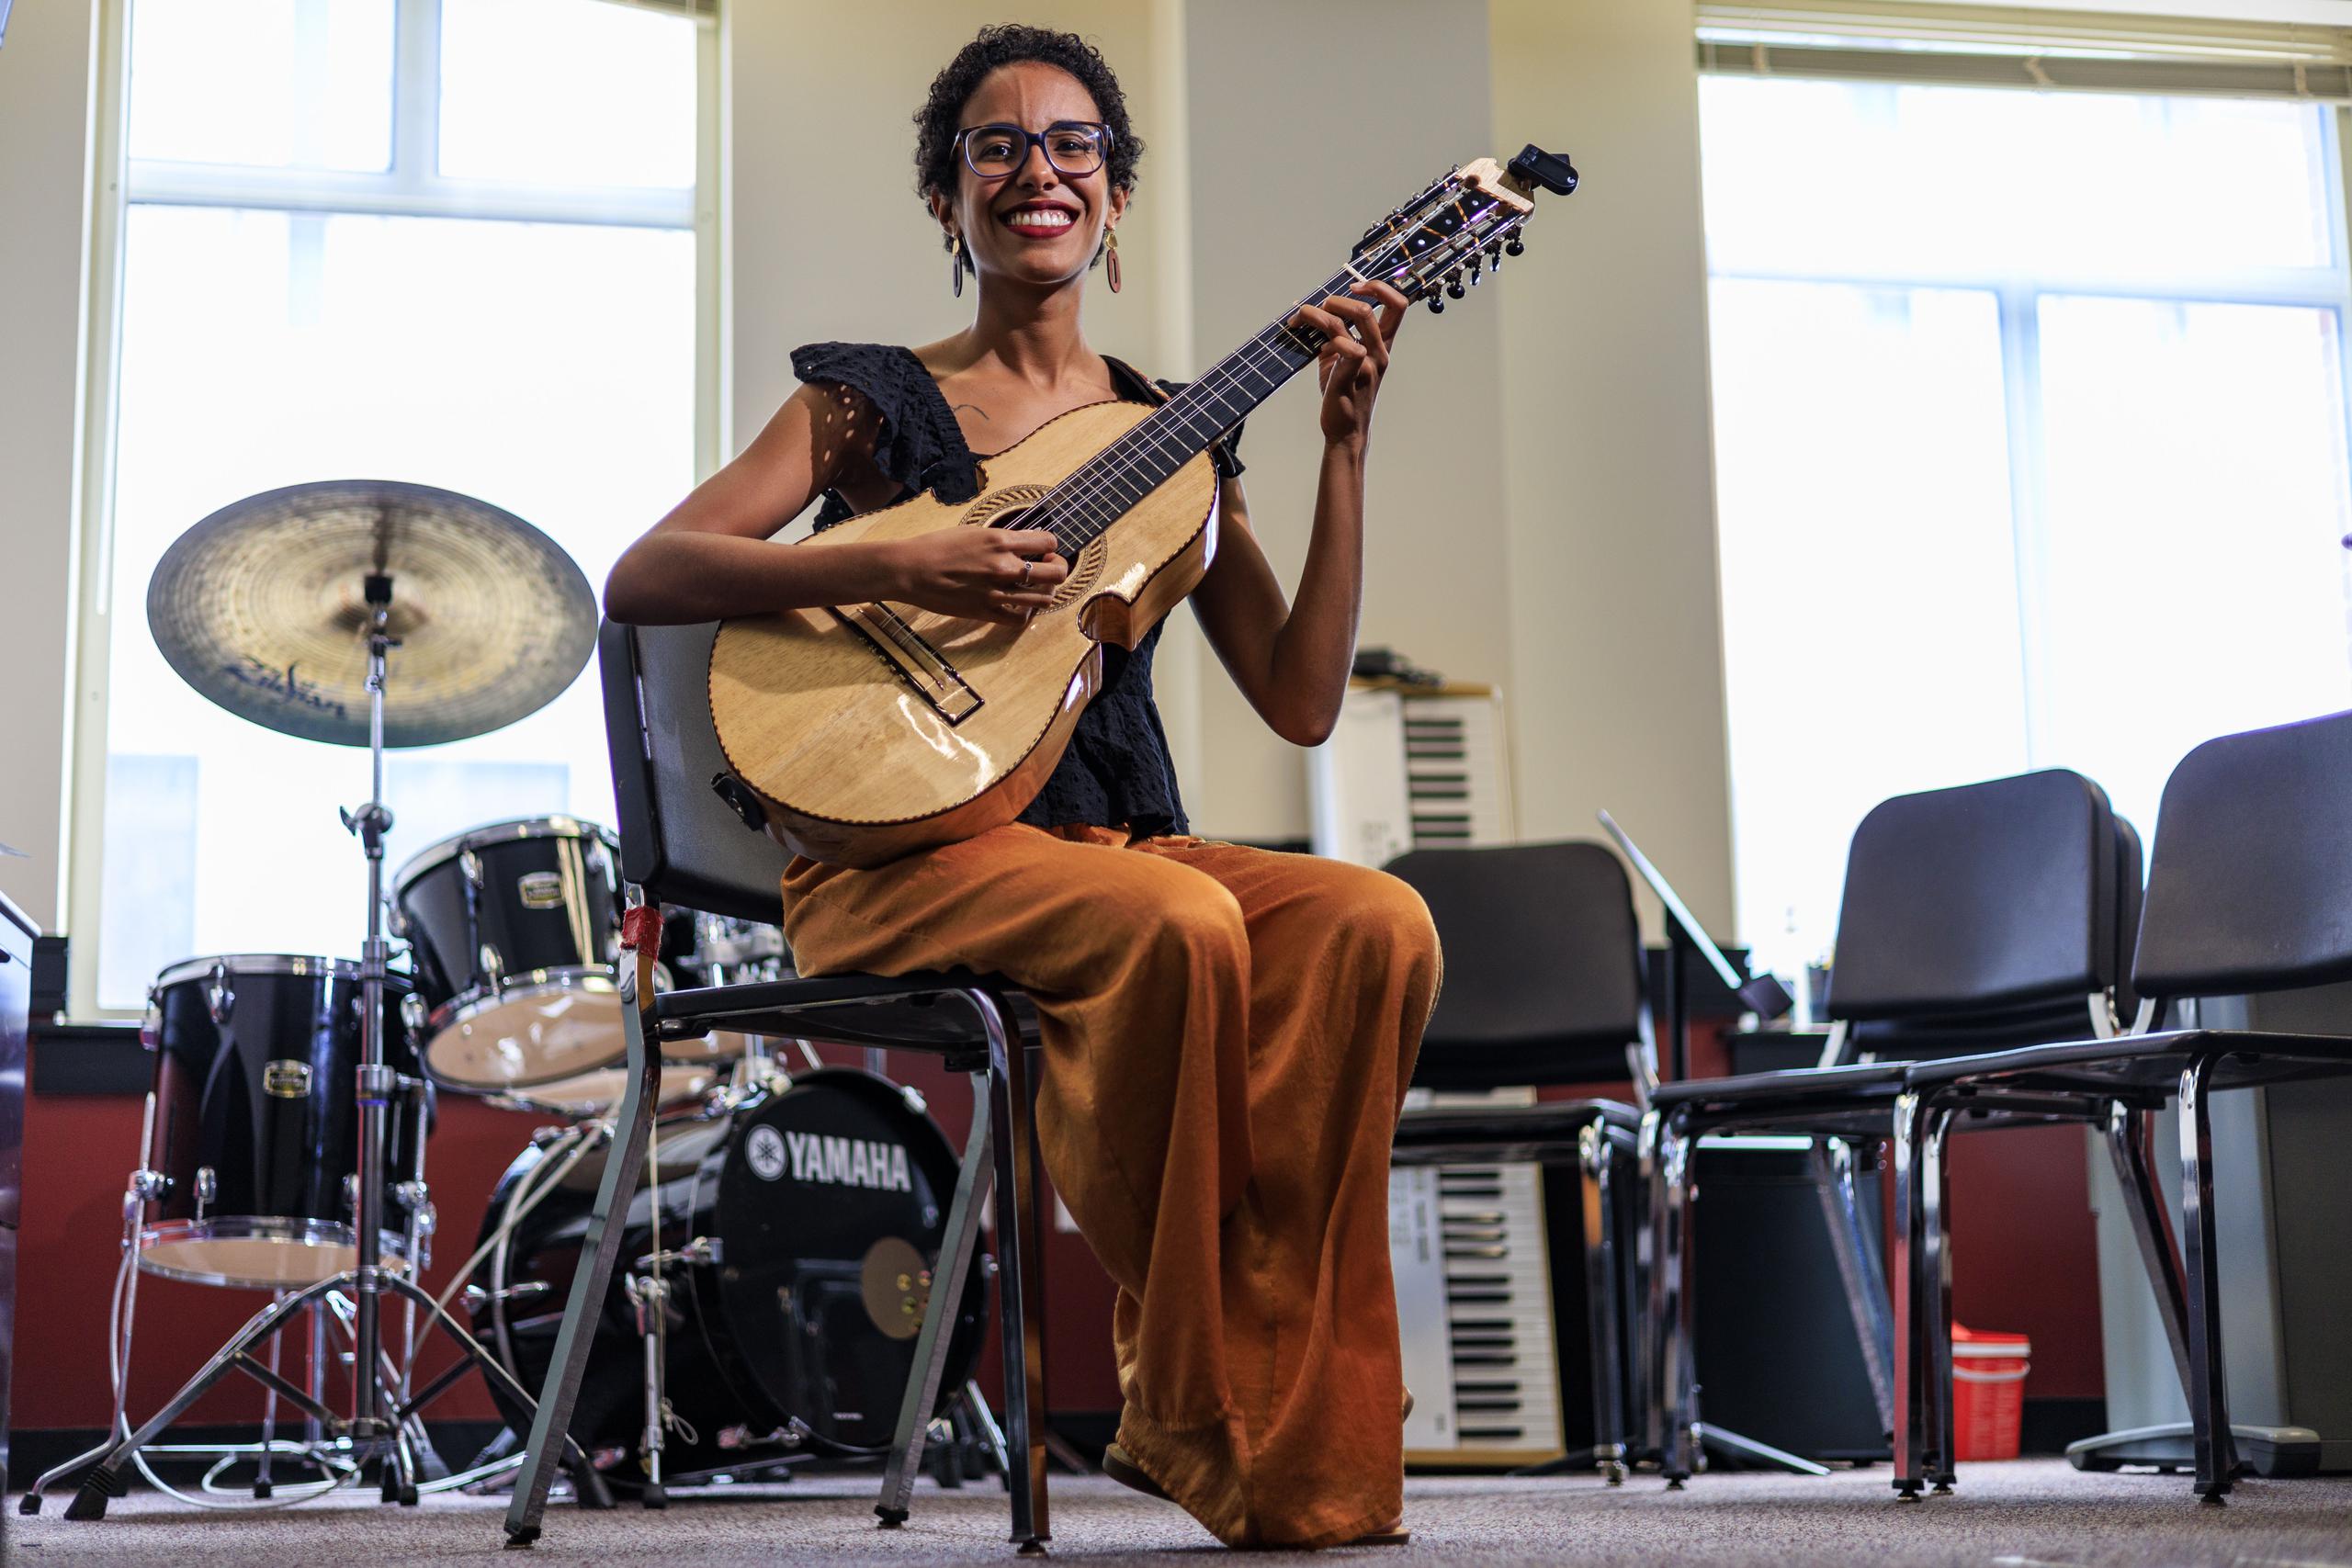 Paralelamente con este proyecto, Fabiola Méndez también participa de otros eventos musicales, como su intervención este domingo en el Festival del Cuatro Puertorriqueño en The Buffalo History Museum en Nueva York.